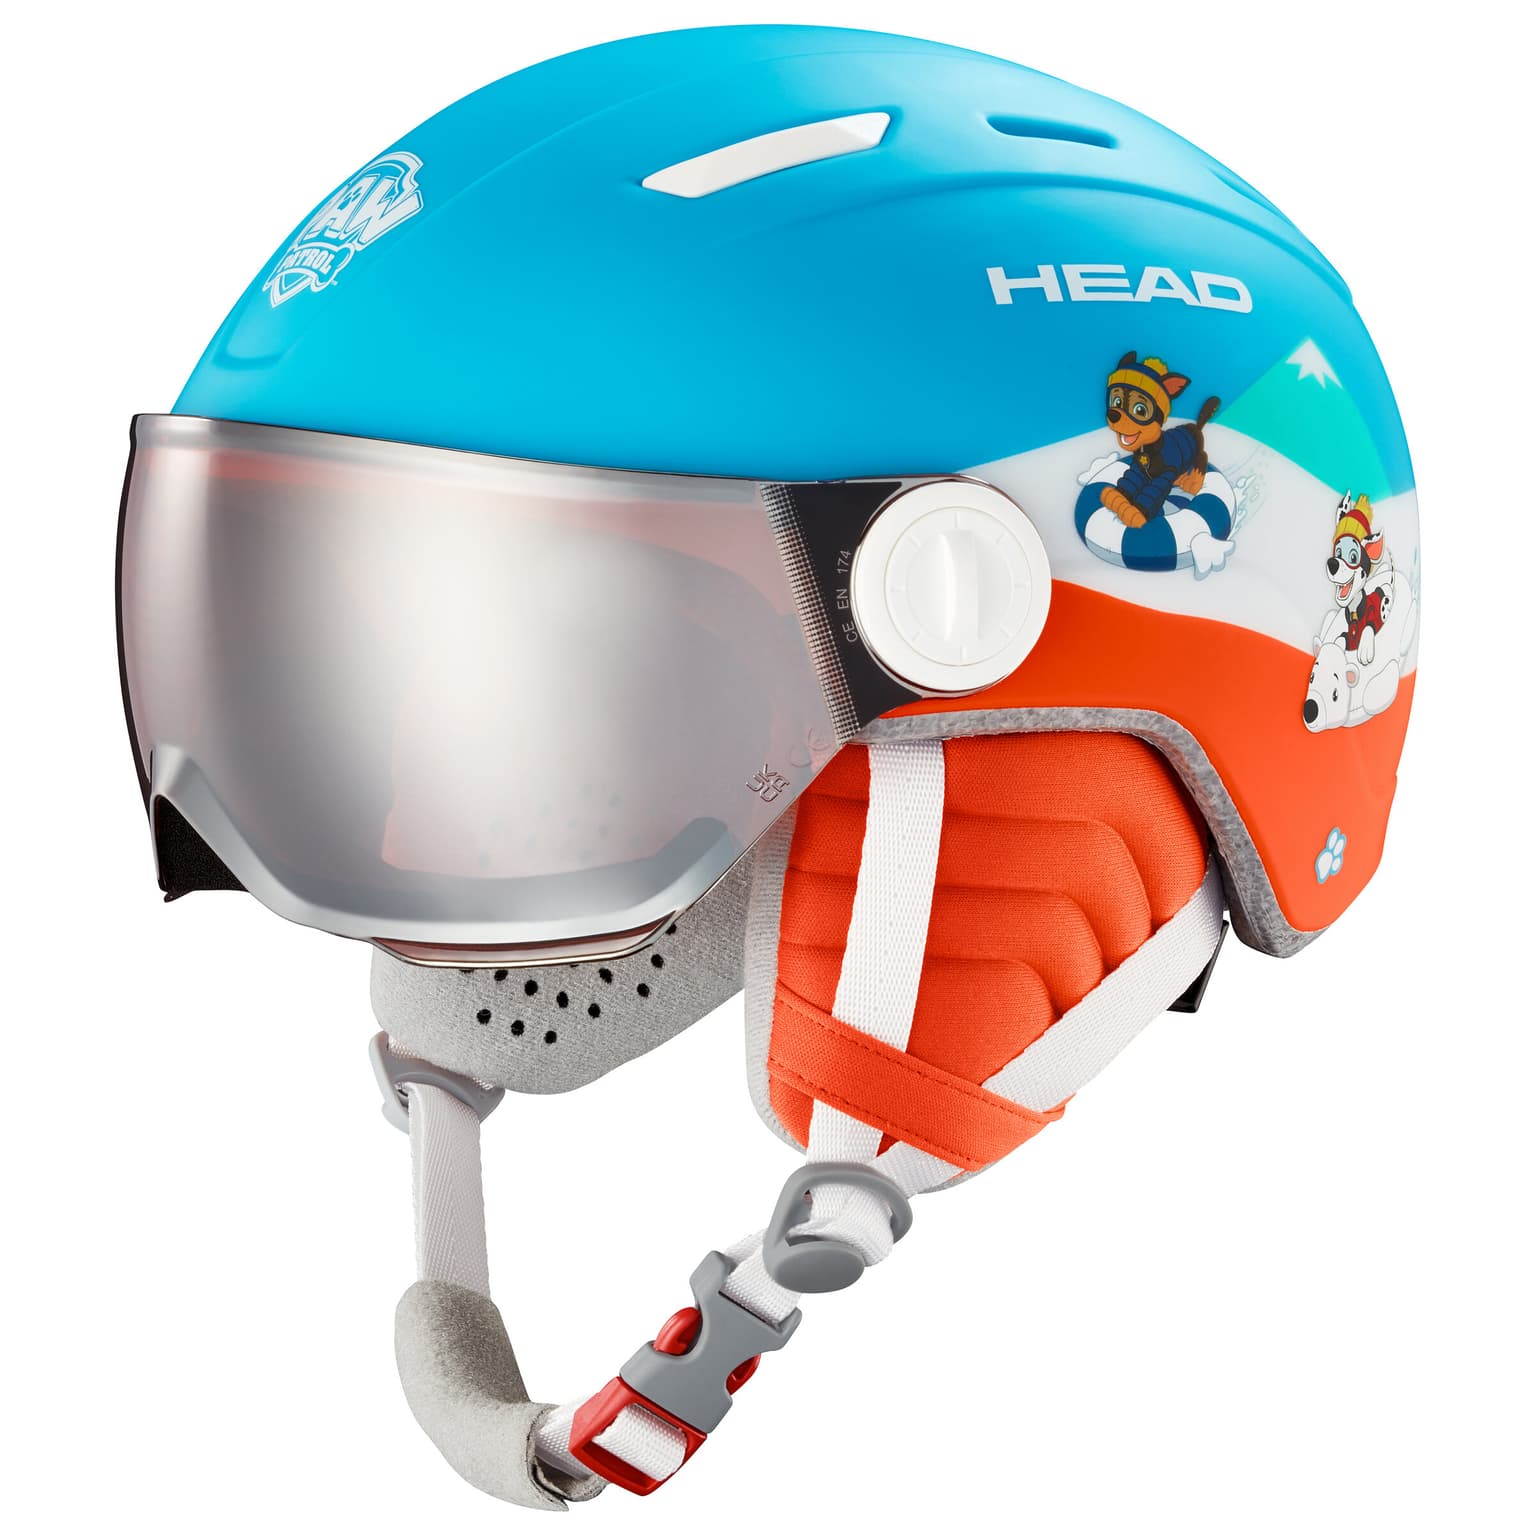 Head Head Kinder-Visorhelm Paw Patrol Skihelm blu 1